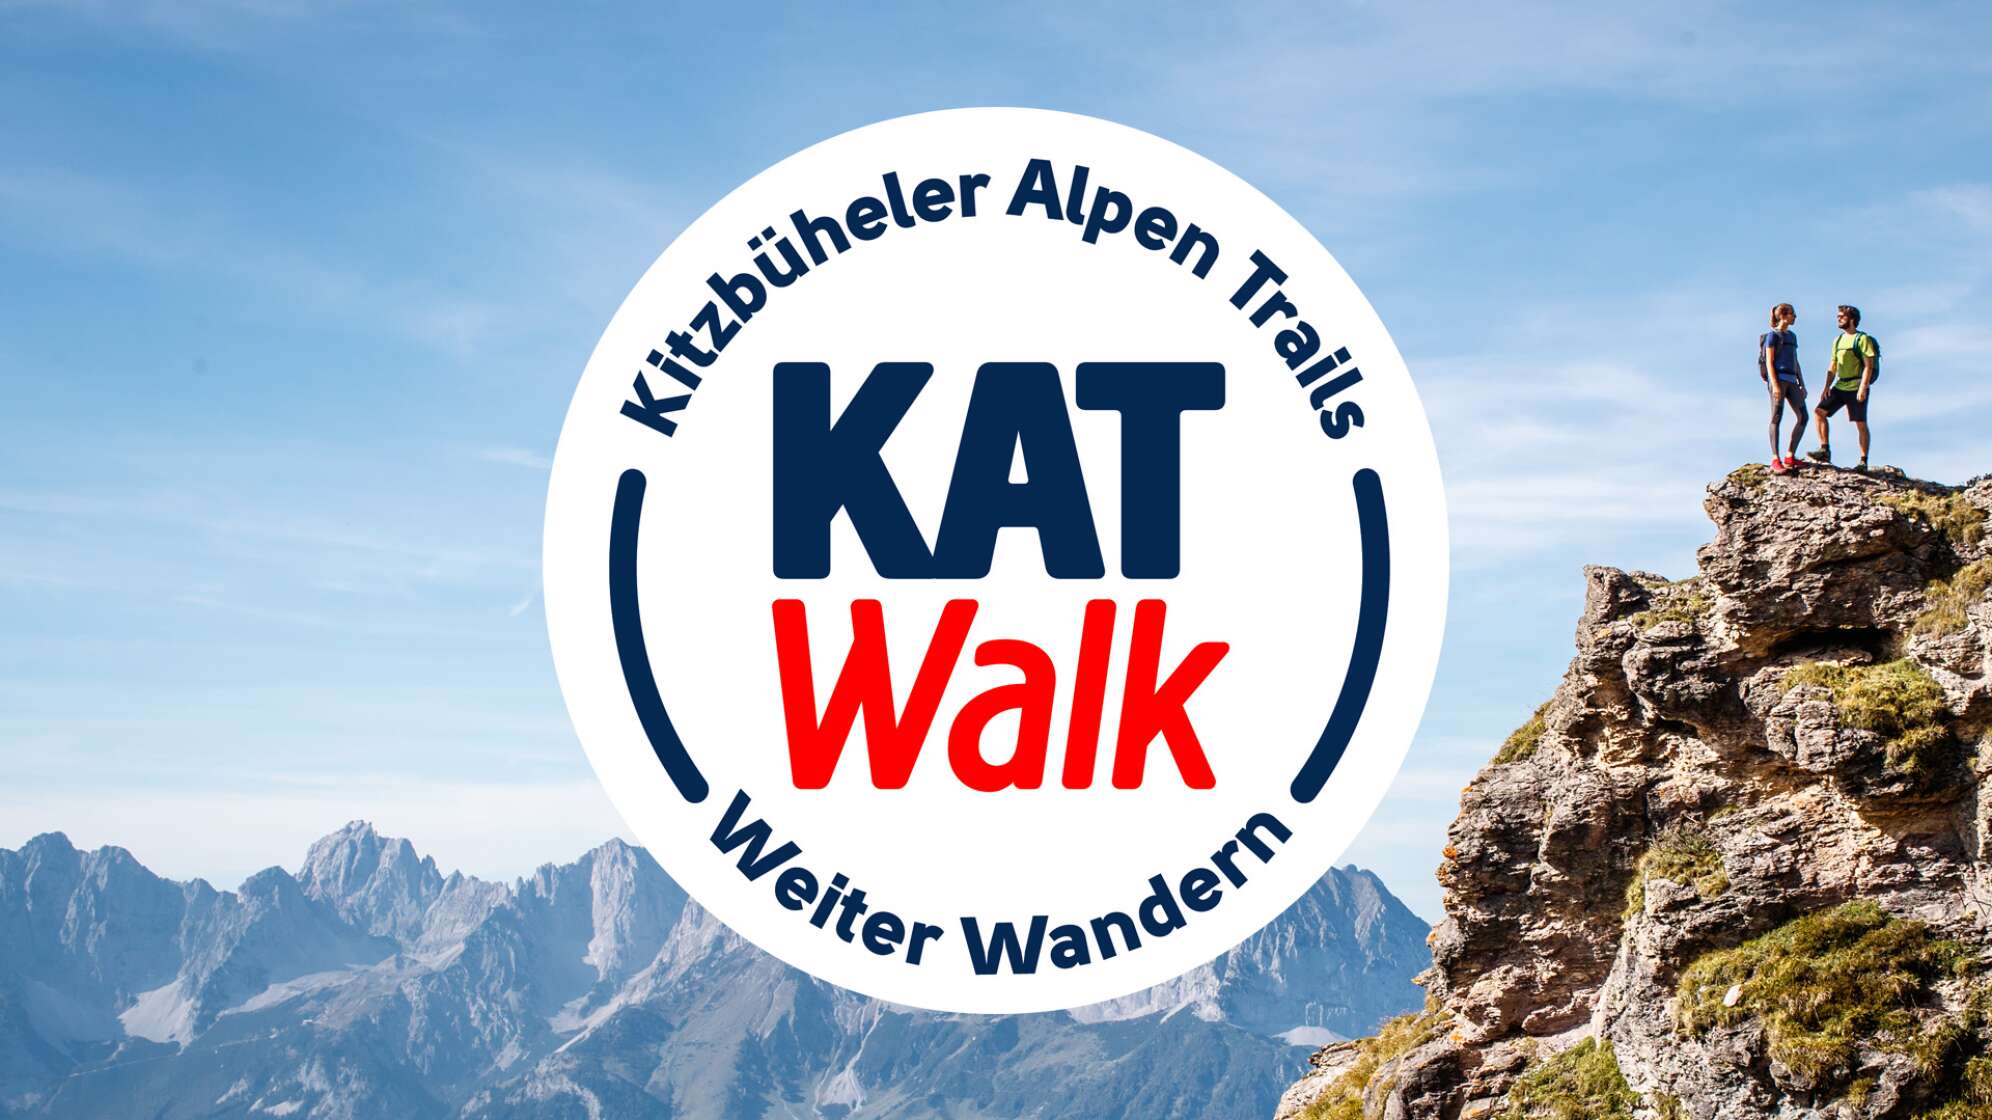 Wunderwelt wandern - Kitzbühler Alpen Trail